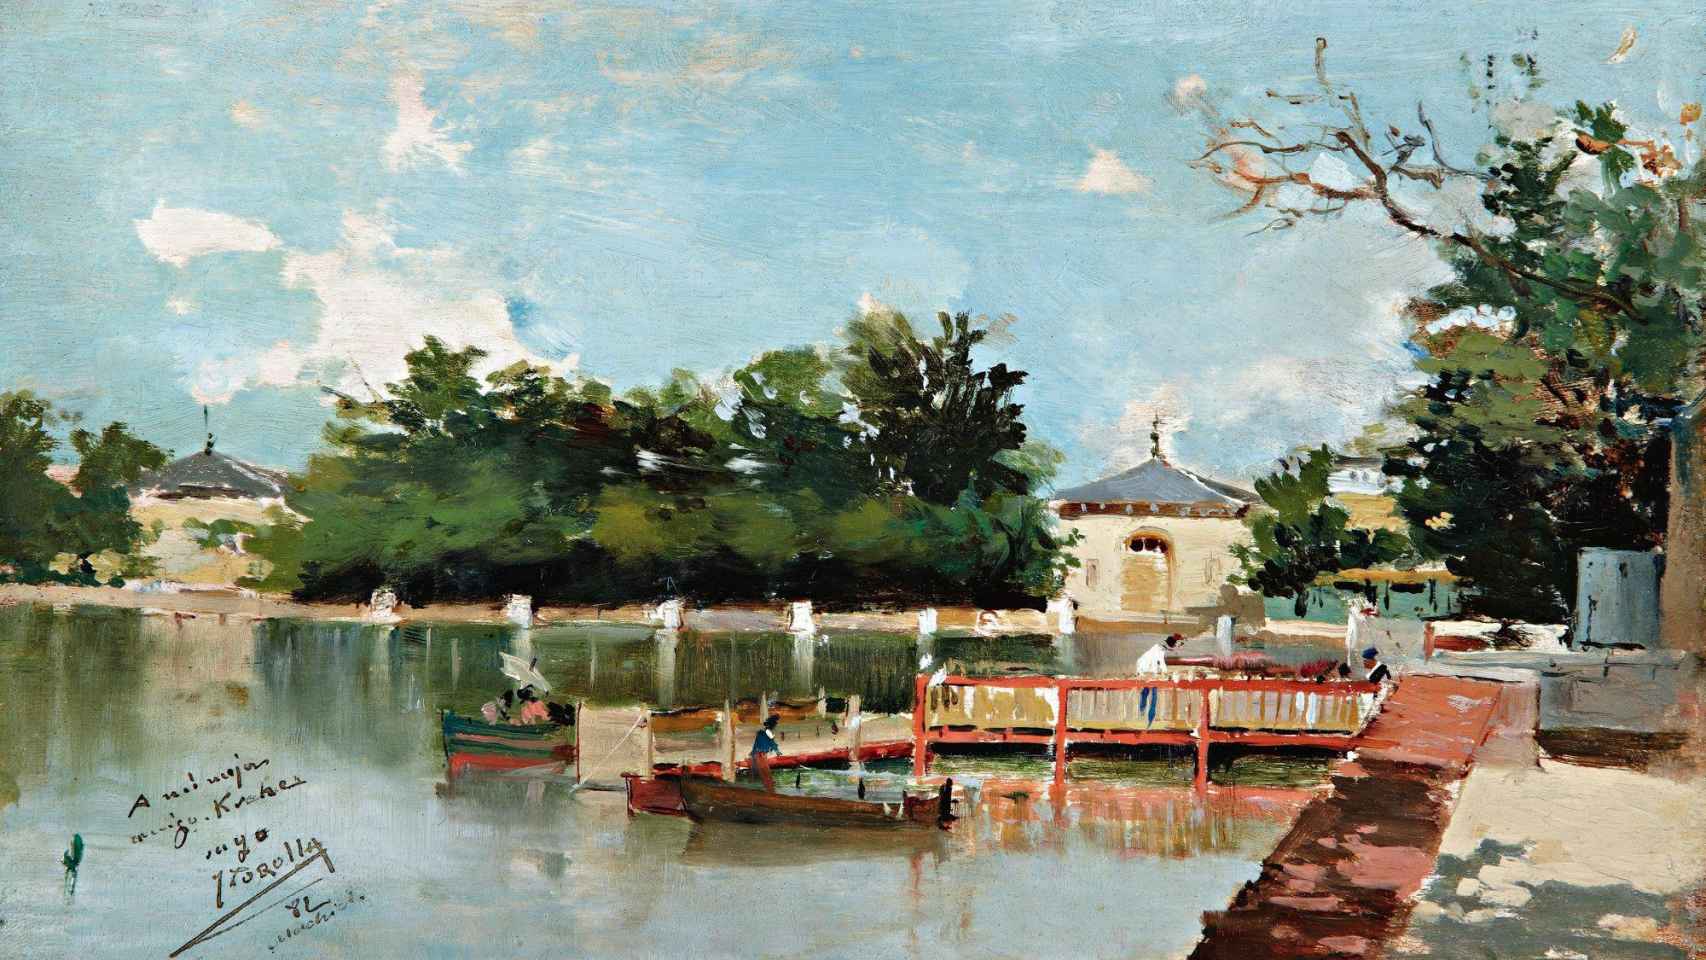 'Vista del embarcadero del parque del Retiro' de Joaquín Sorolla, 1882.